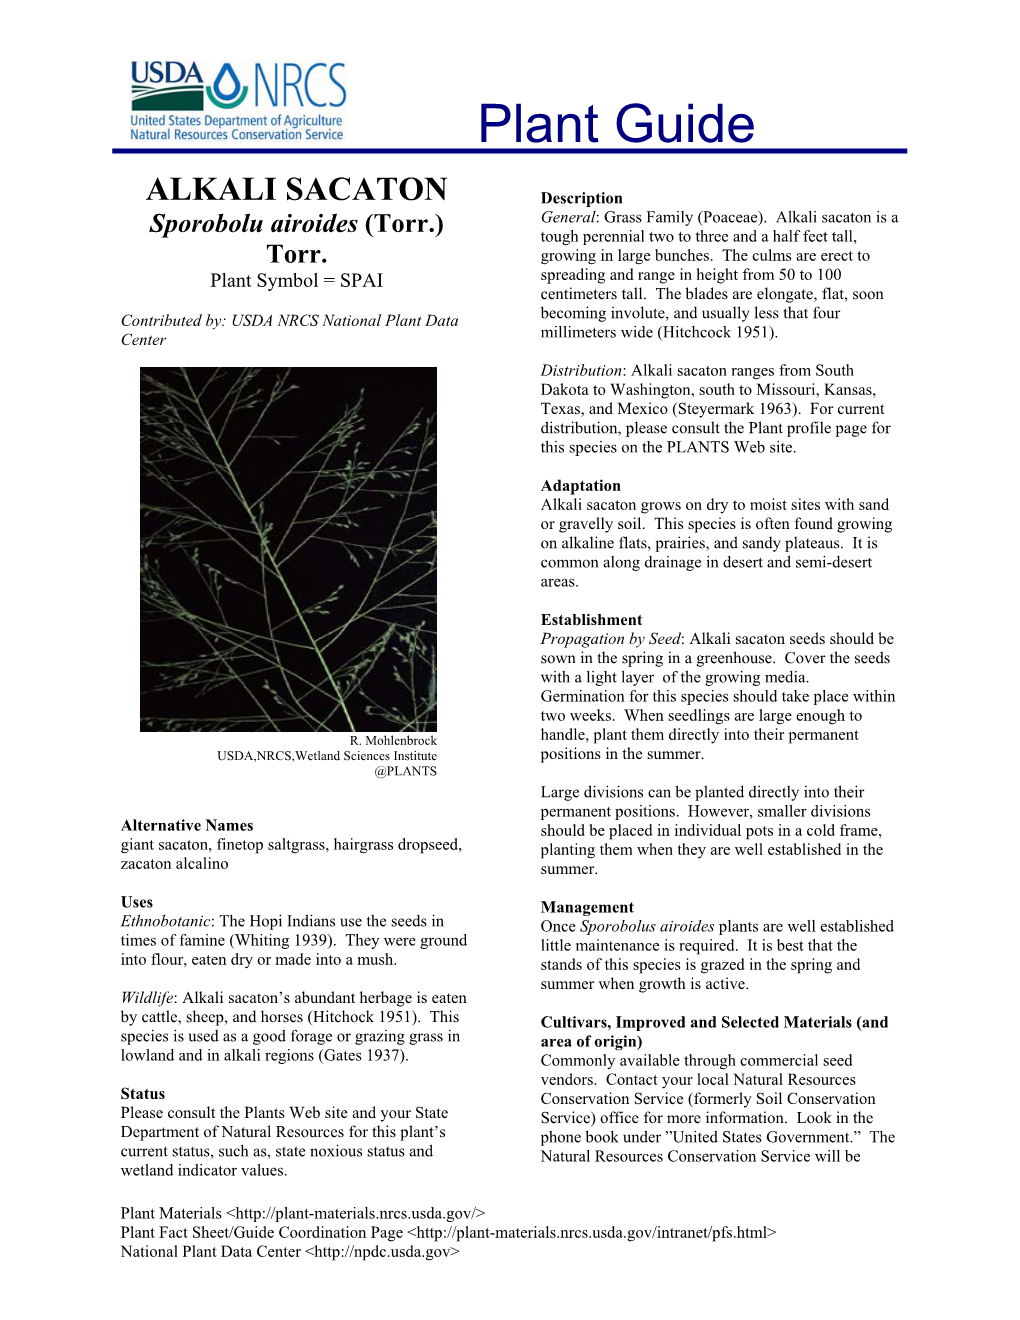 ALKALI SACATON Description General: Grass Family (Poaceae)